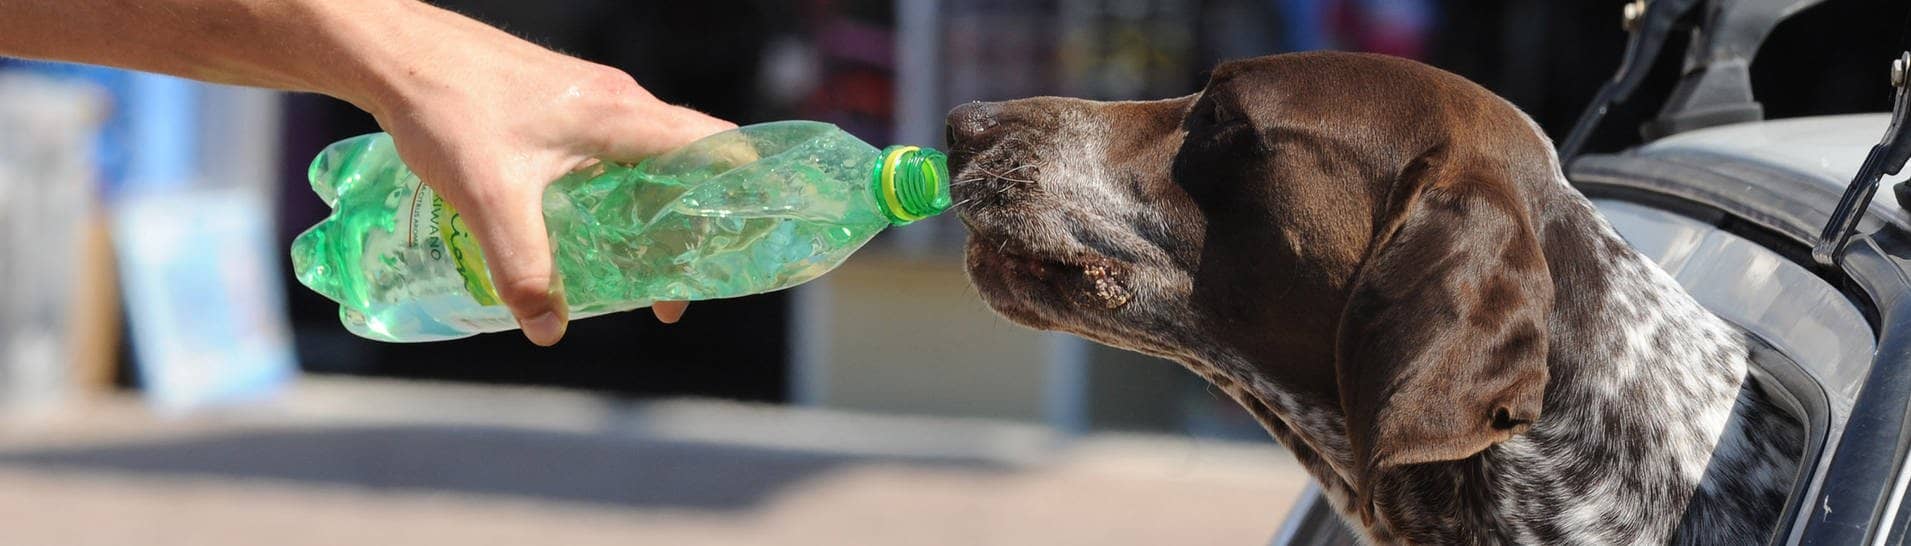 Hund im Auto trinkt Wasser aus einer Flasche